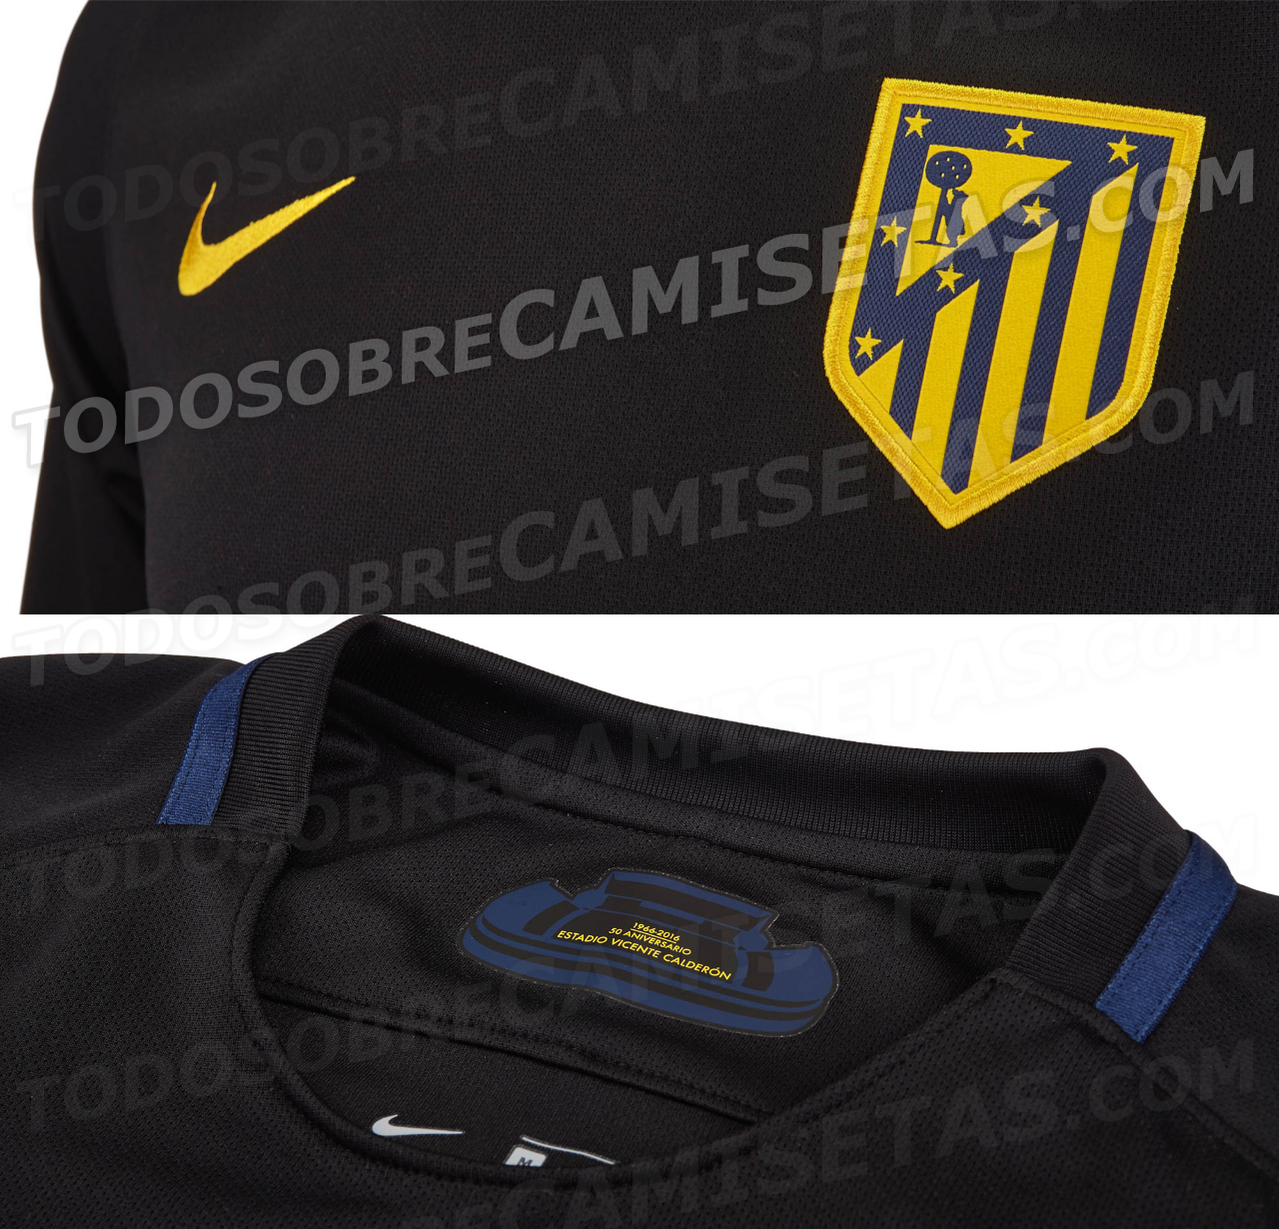 Camiseta visitante Nike de Atlético de Madrid 2016-17